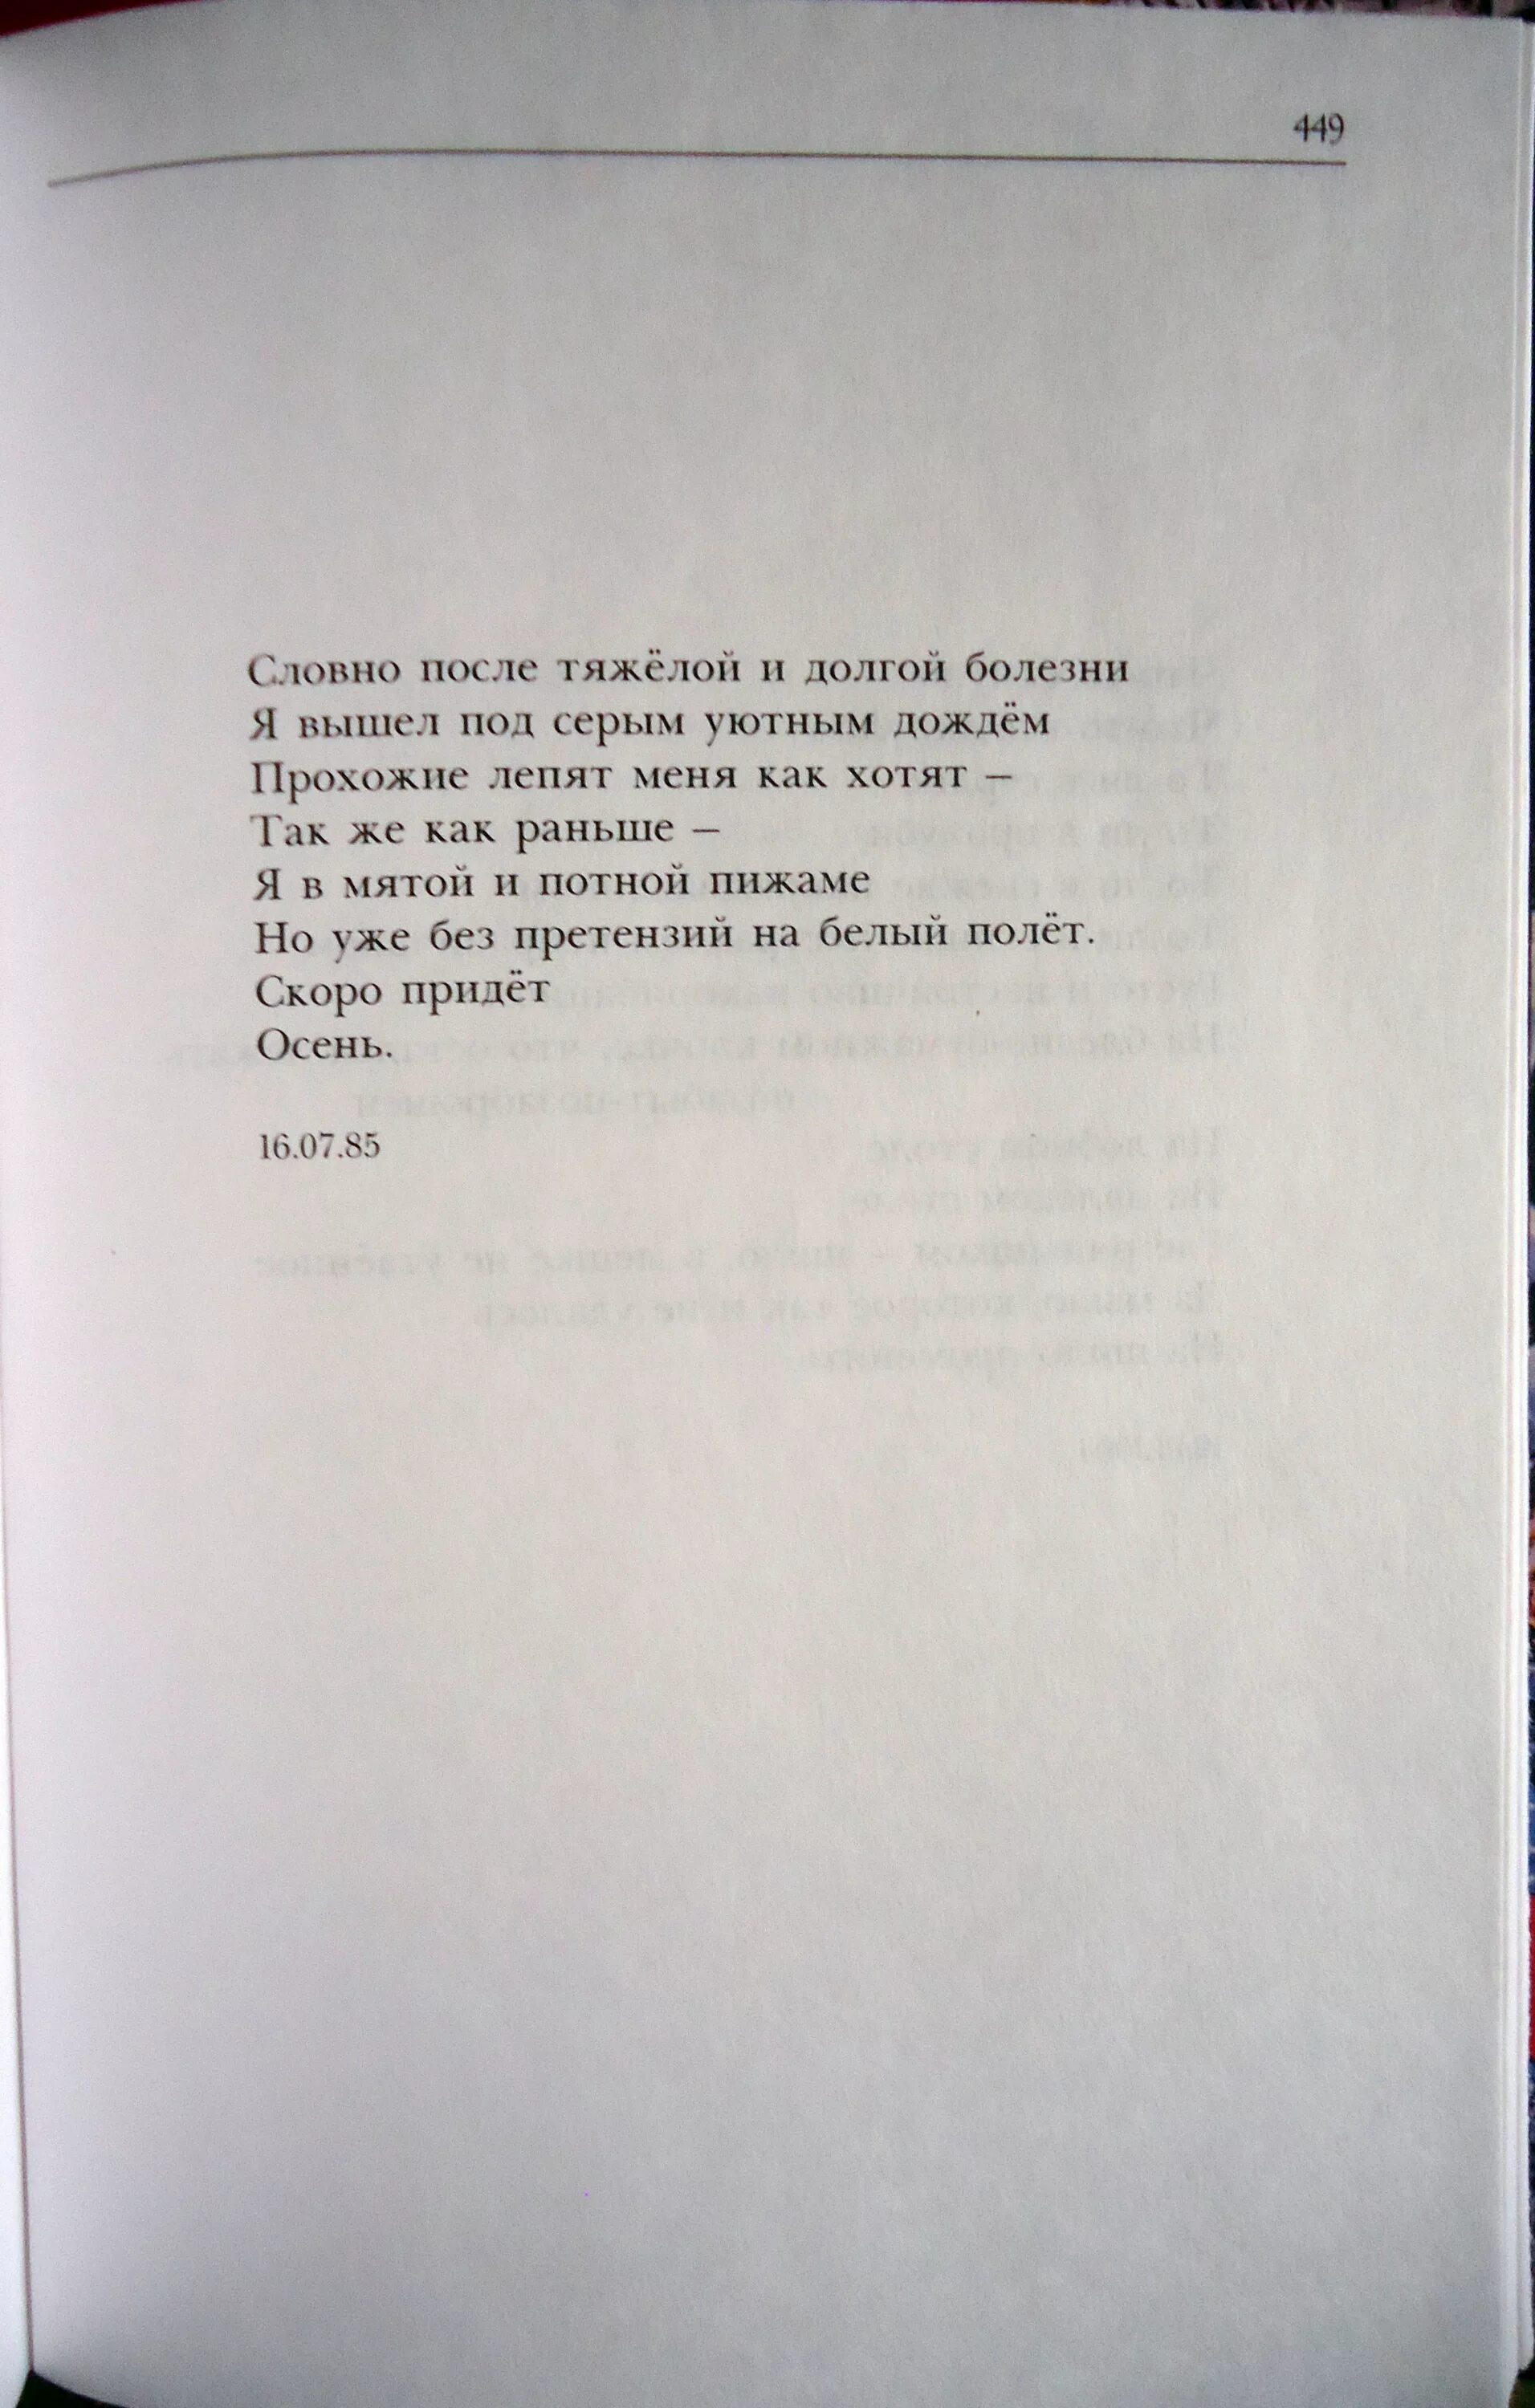 Летов стихи читать. Стихотворение Егора Летова из 3 строк.